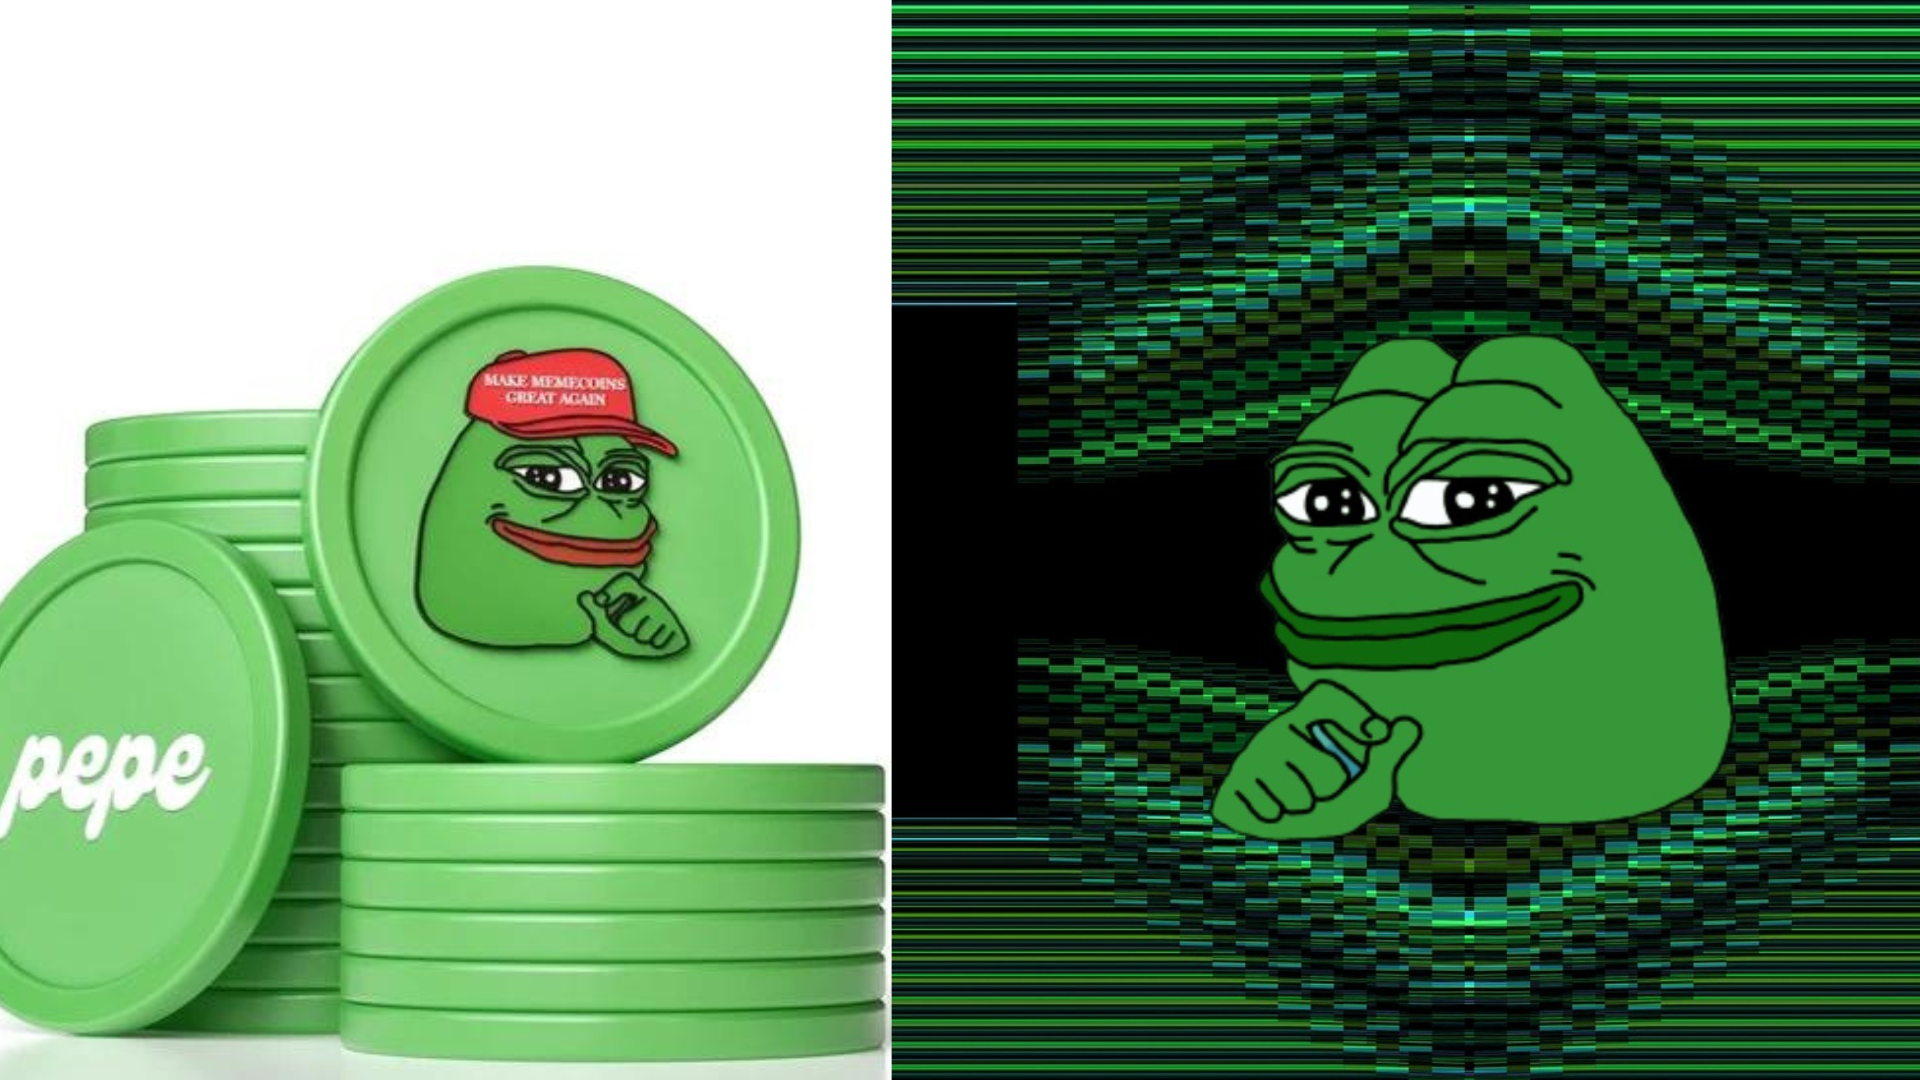 une IA générée à partir de pièces vertes avec le logo "Pepe la grenouille", comme affiche principale implicite "comment acheter"